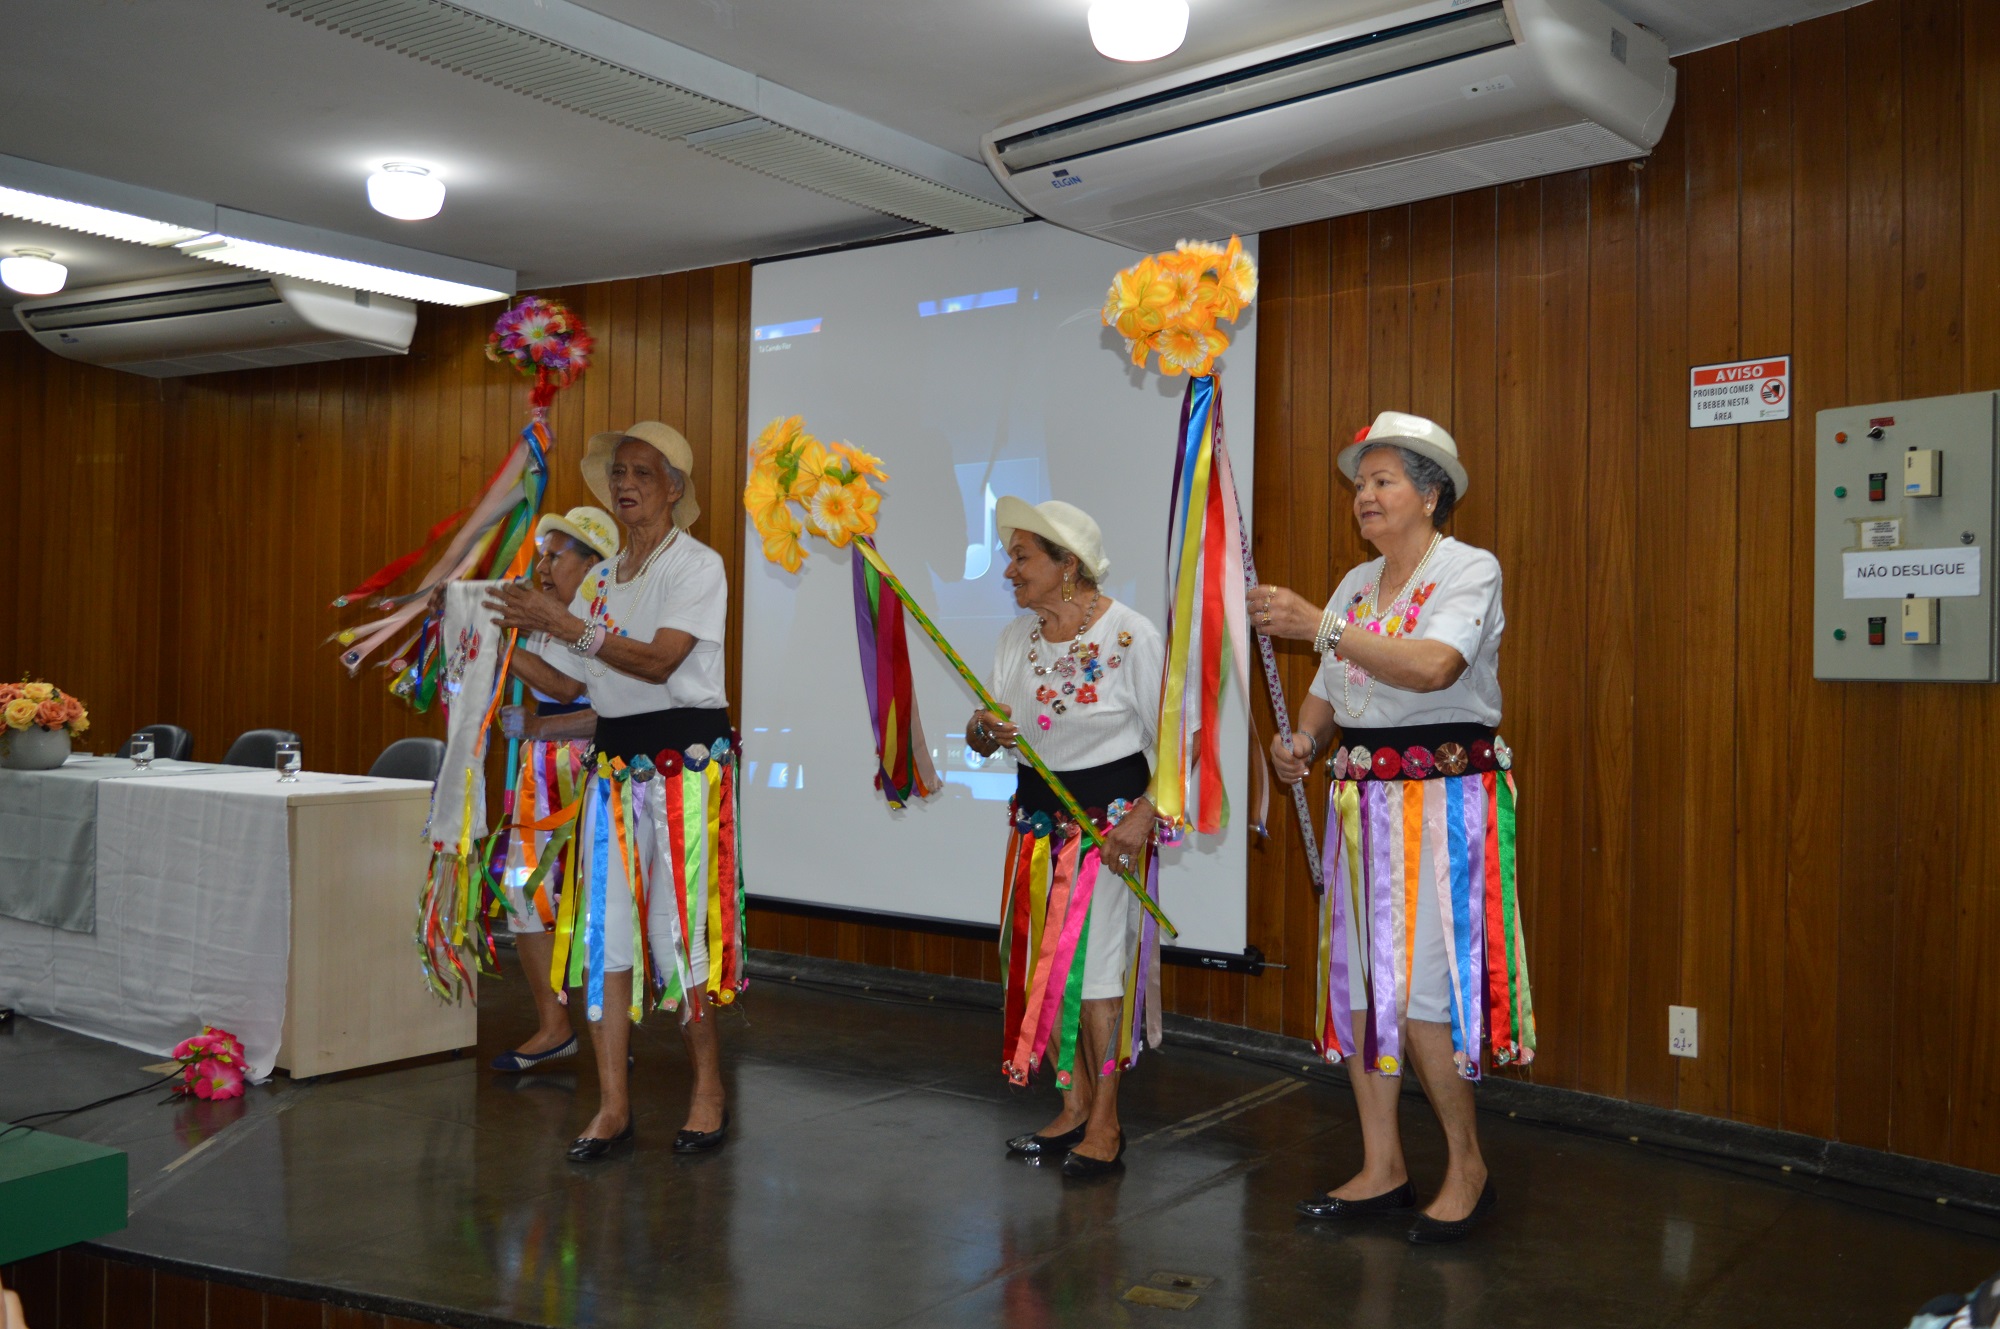 O lançamento do programa contou com apresentação cultural da Cia. de Teatro Senhora do Cerrado.